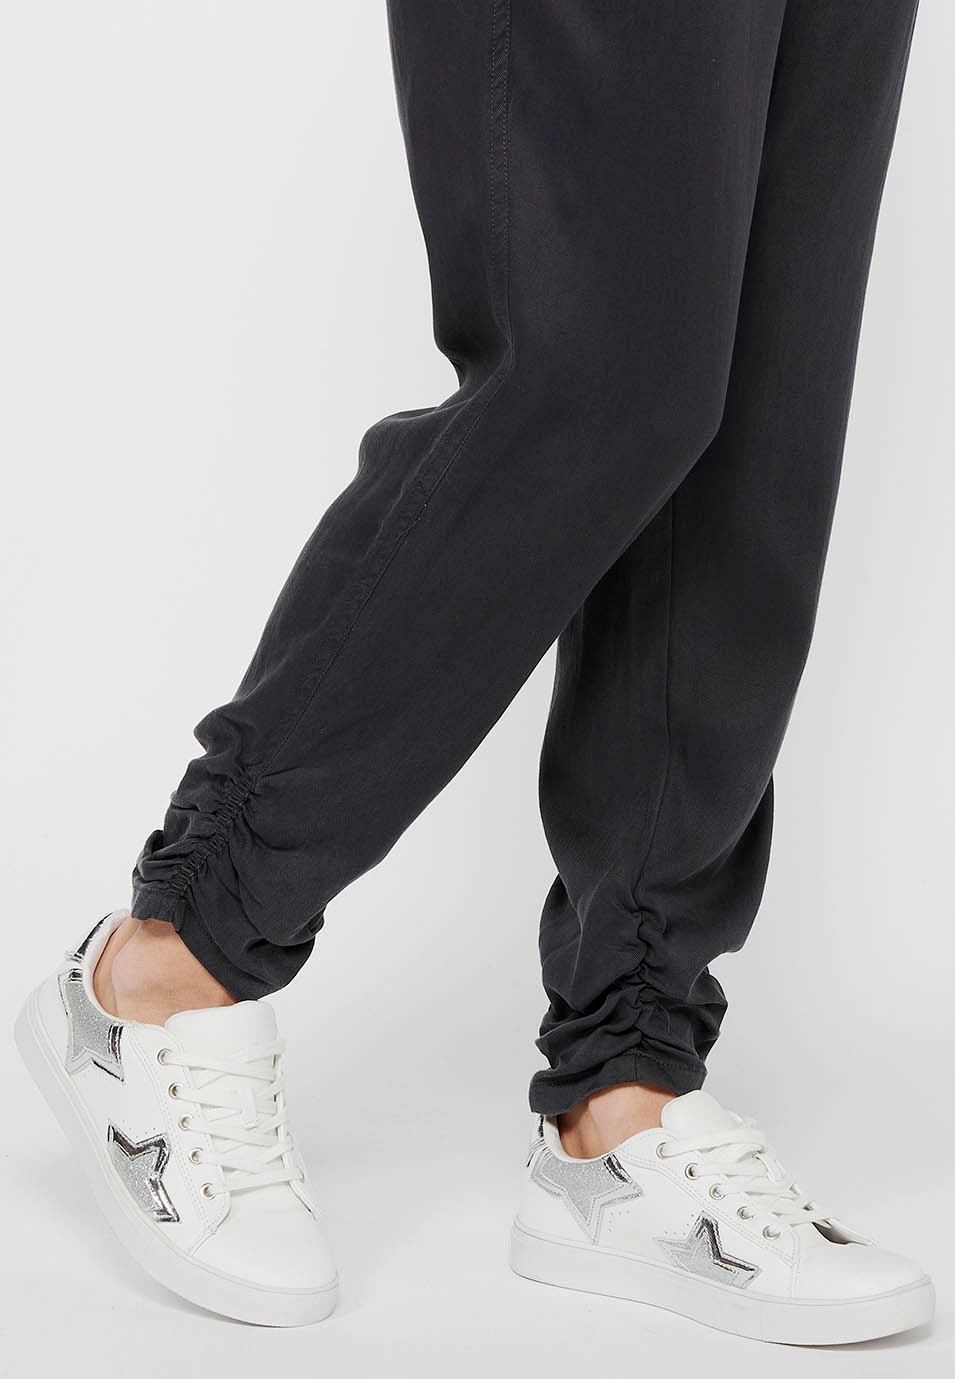 Pantalón largo jogger con Acabado rizado y Cintura engomada con Cuatro bolsillos, dos traseros con solapa de Color Negro para Mujer 9